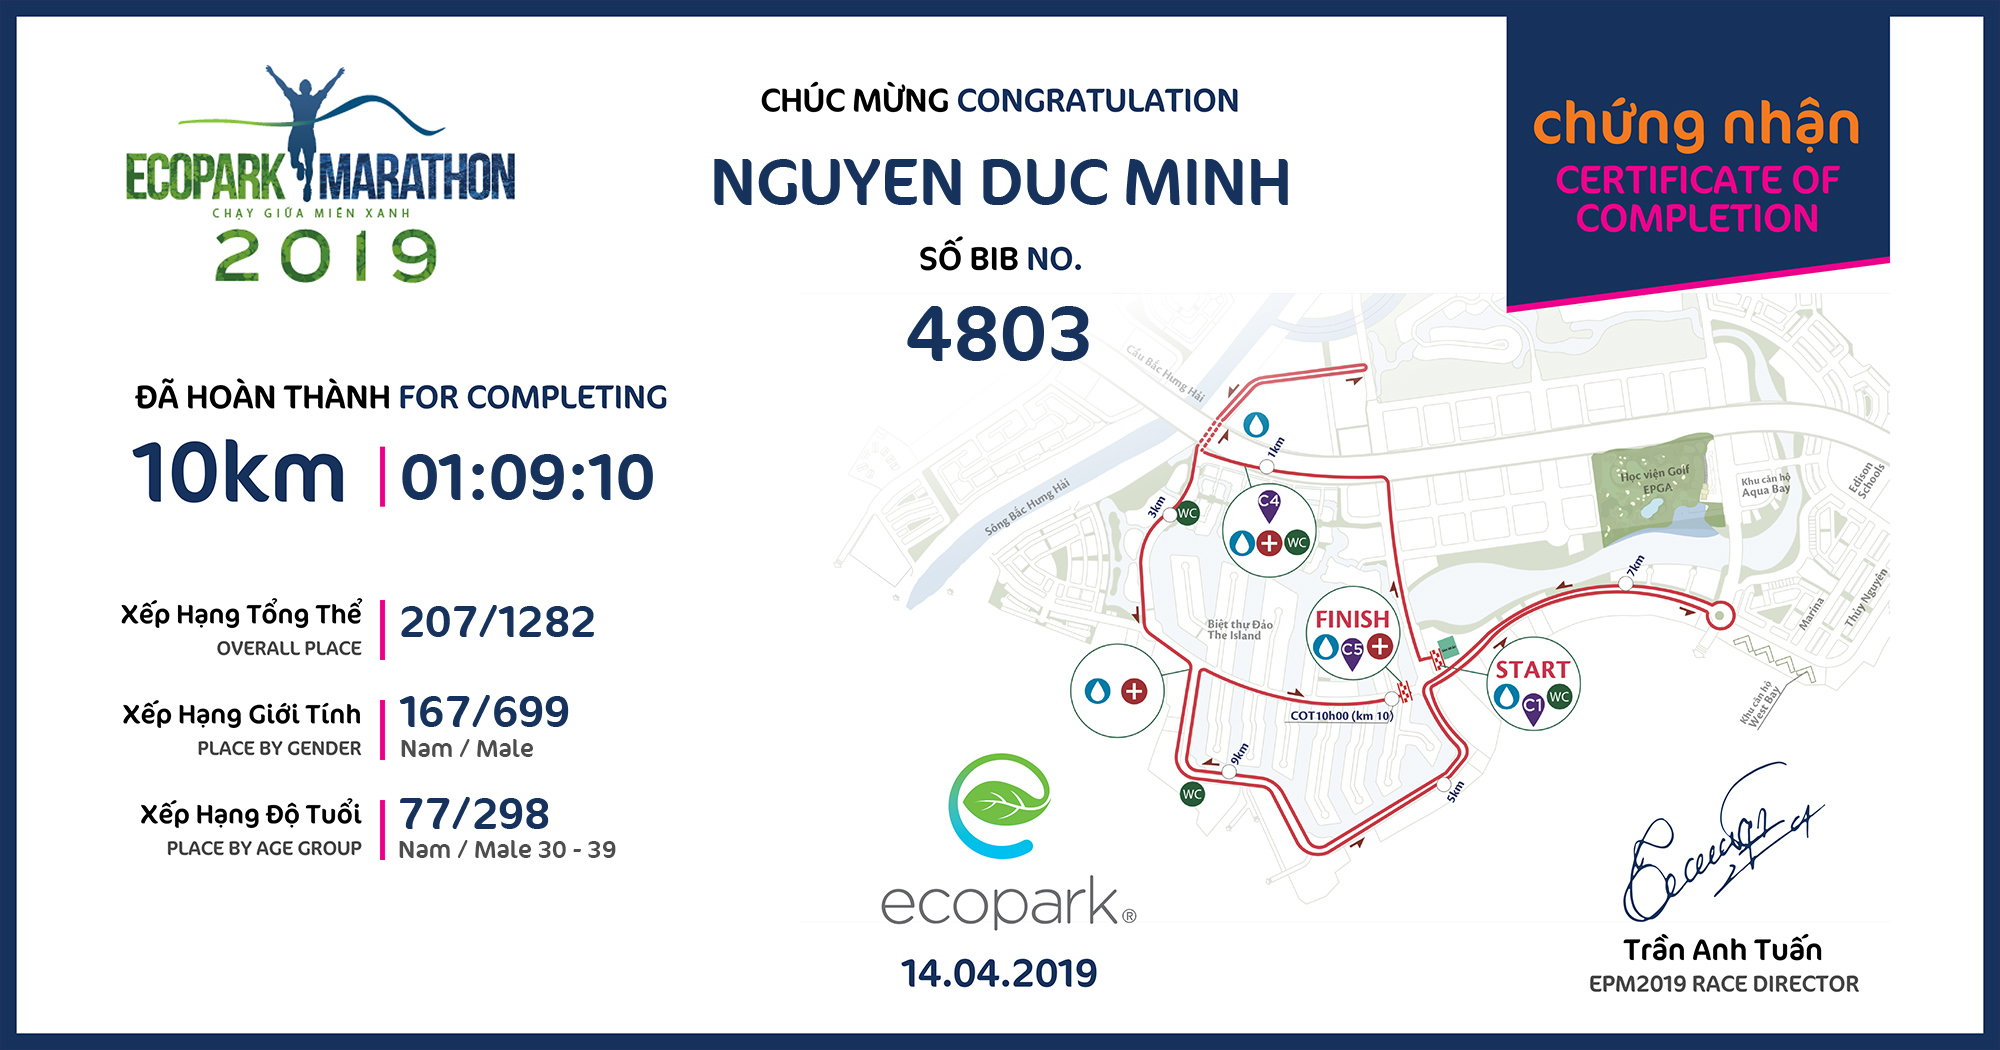 4803 - Nguyen Duc Minh